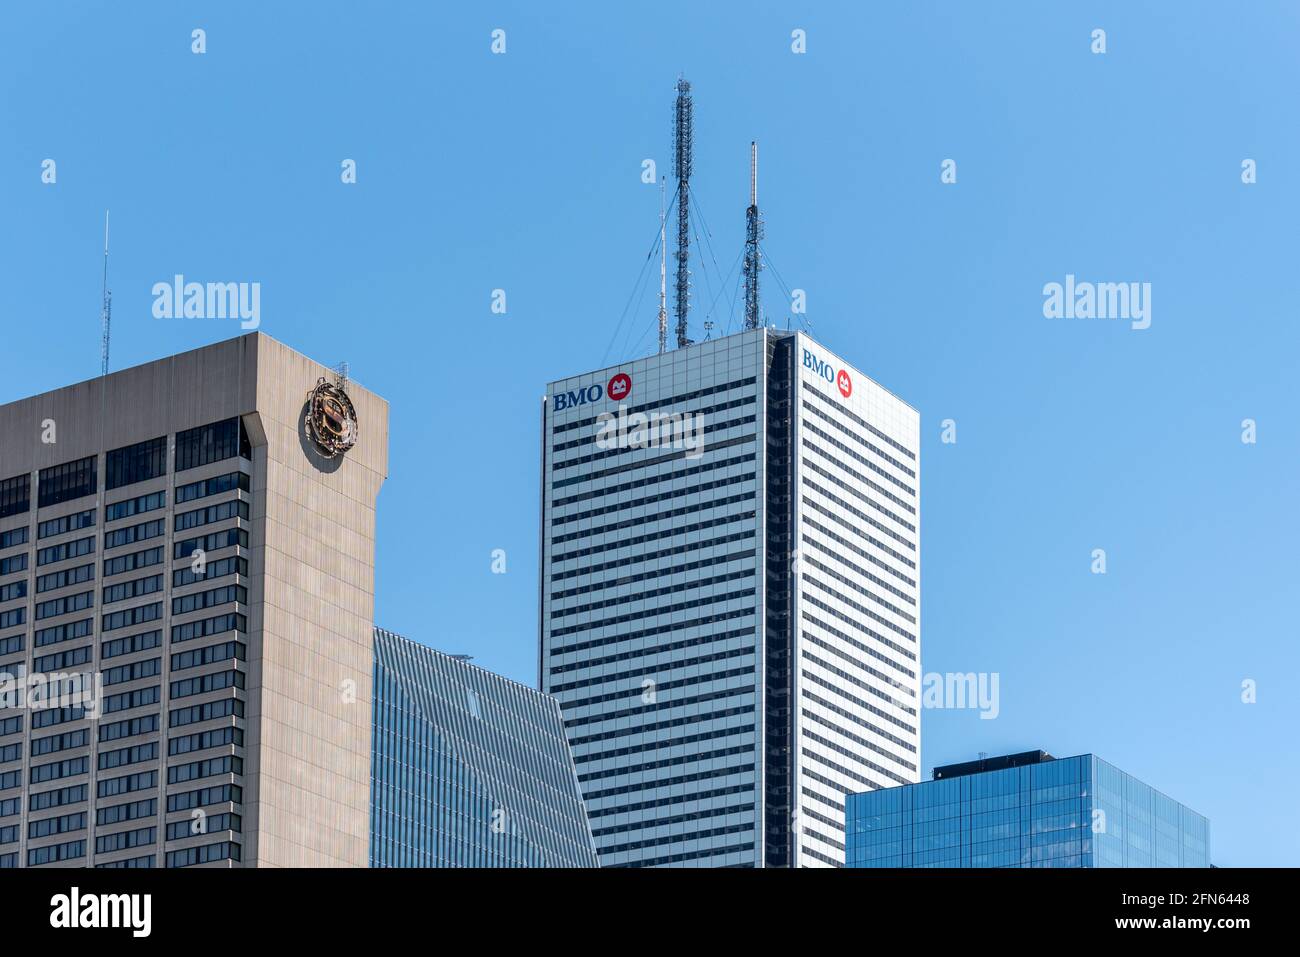 Zoomez sur les gratte-ciel du quartier du centre-ville de Toronto, Canada. Les logos du Sheraton Centre et de BMO sont visibles sur les bâtiments Banque D'Images